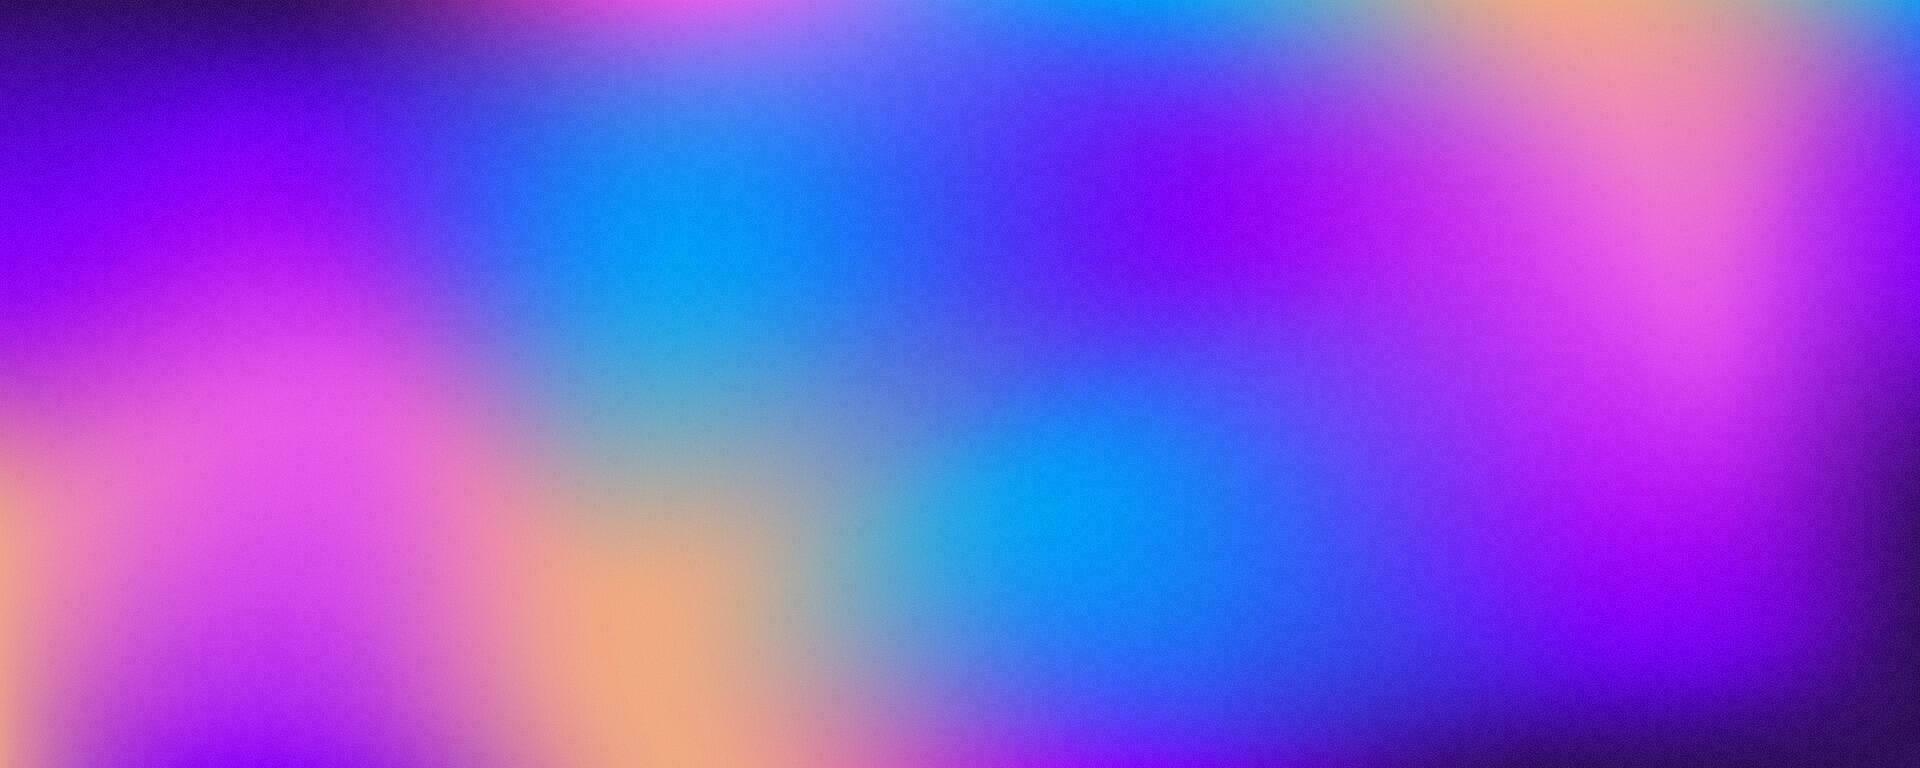 holografiska lutning texturerad bakgrund. högljudd ljus regnbåge gradering. mjuk färger kornig folie. abstrakt suddig vätska tapet. vektor. vektor